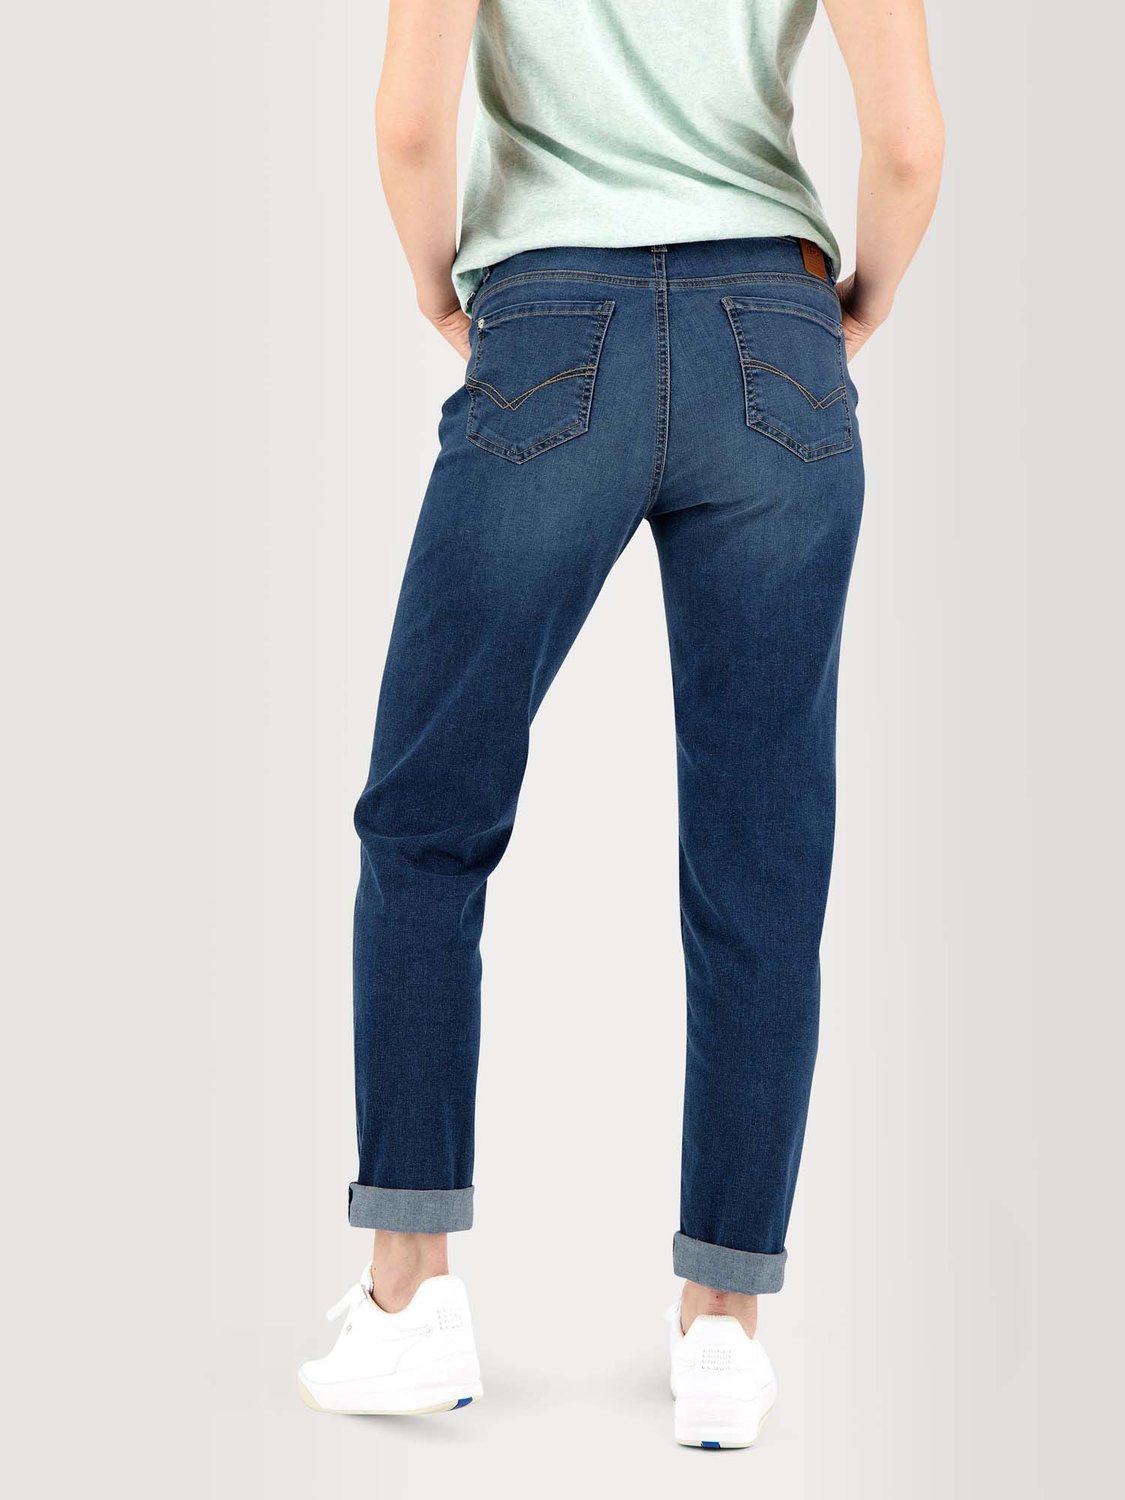 Pantalon Femme En Jean Ceinture Elastiquée Coton Recyclé